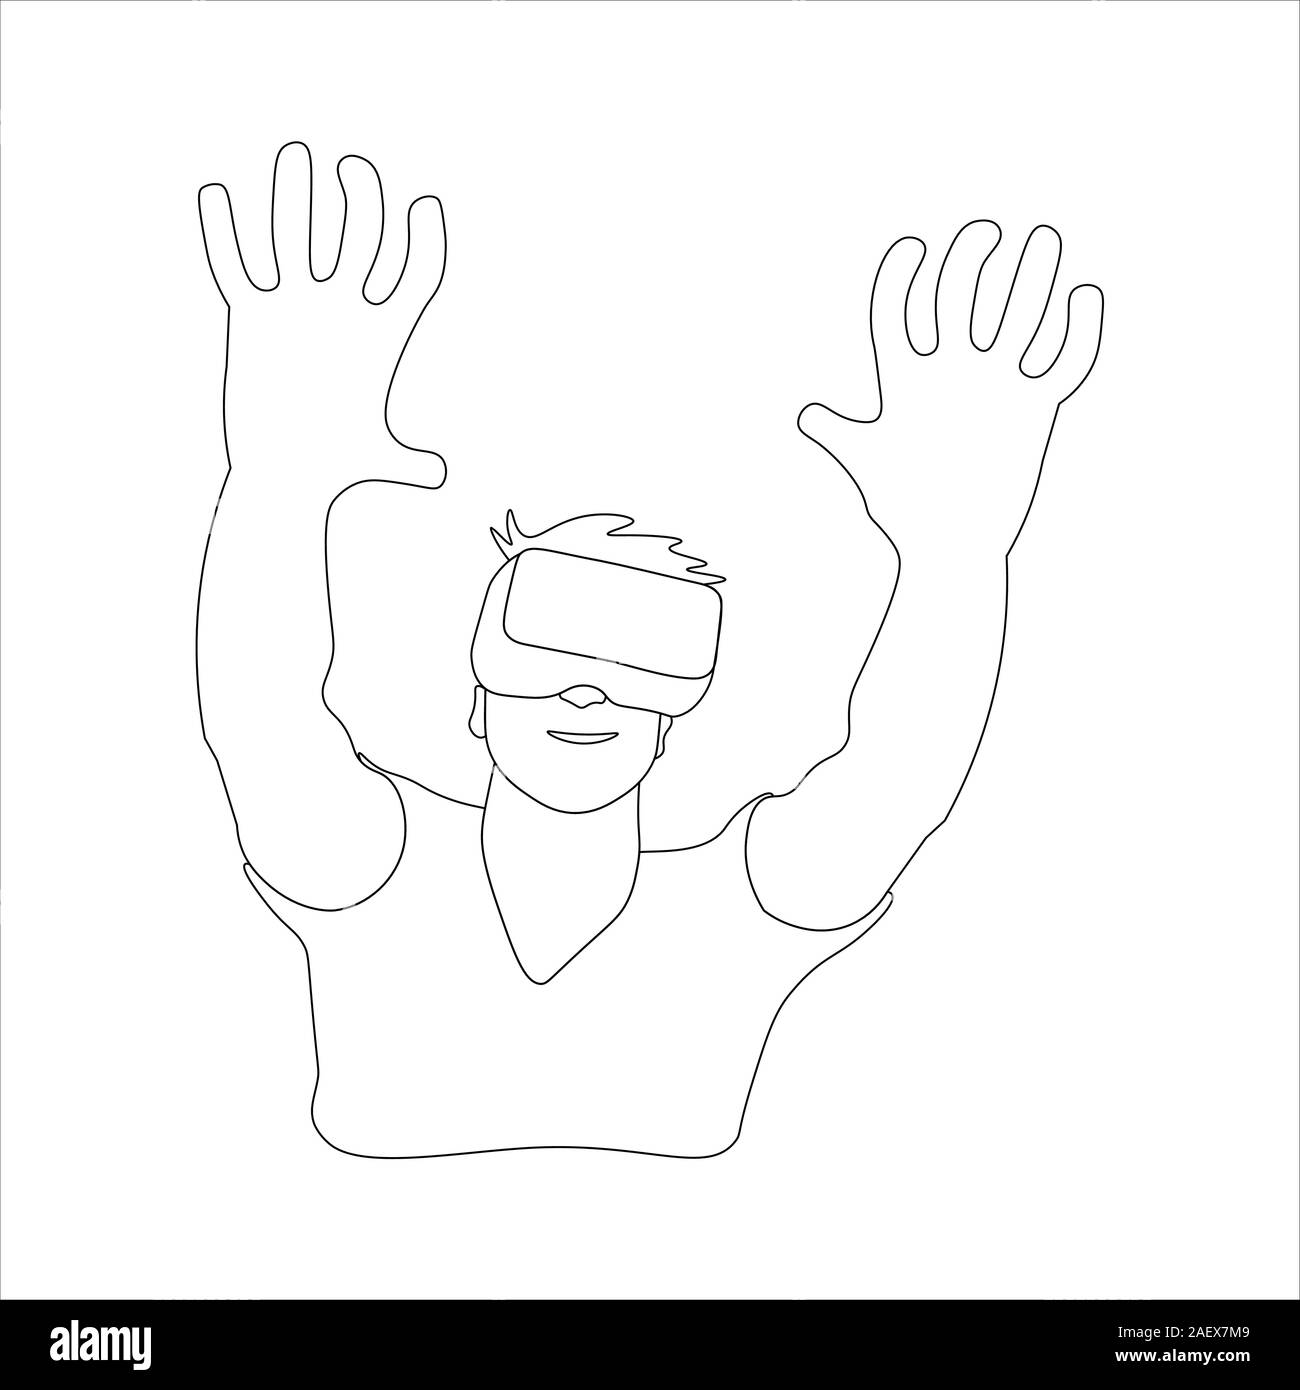 Virtual Reality: Mann mit VR-Brille. Schwarzer Umriss auf weißem Hintergrund. Bild kann in Grußkarten, Poster, Flyer, Banner, Logo verwendet werden, die weitere Gestaltung etc. Vector Illustration. EPS 10. Stock Vektor